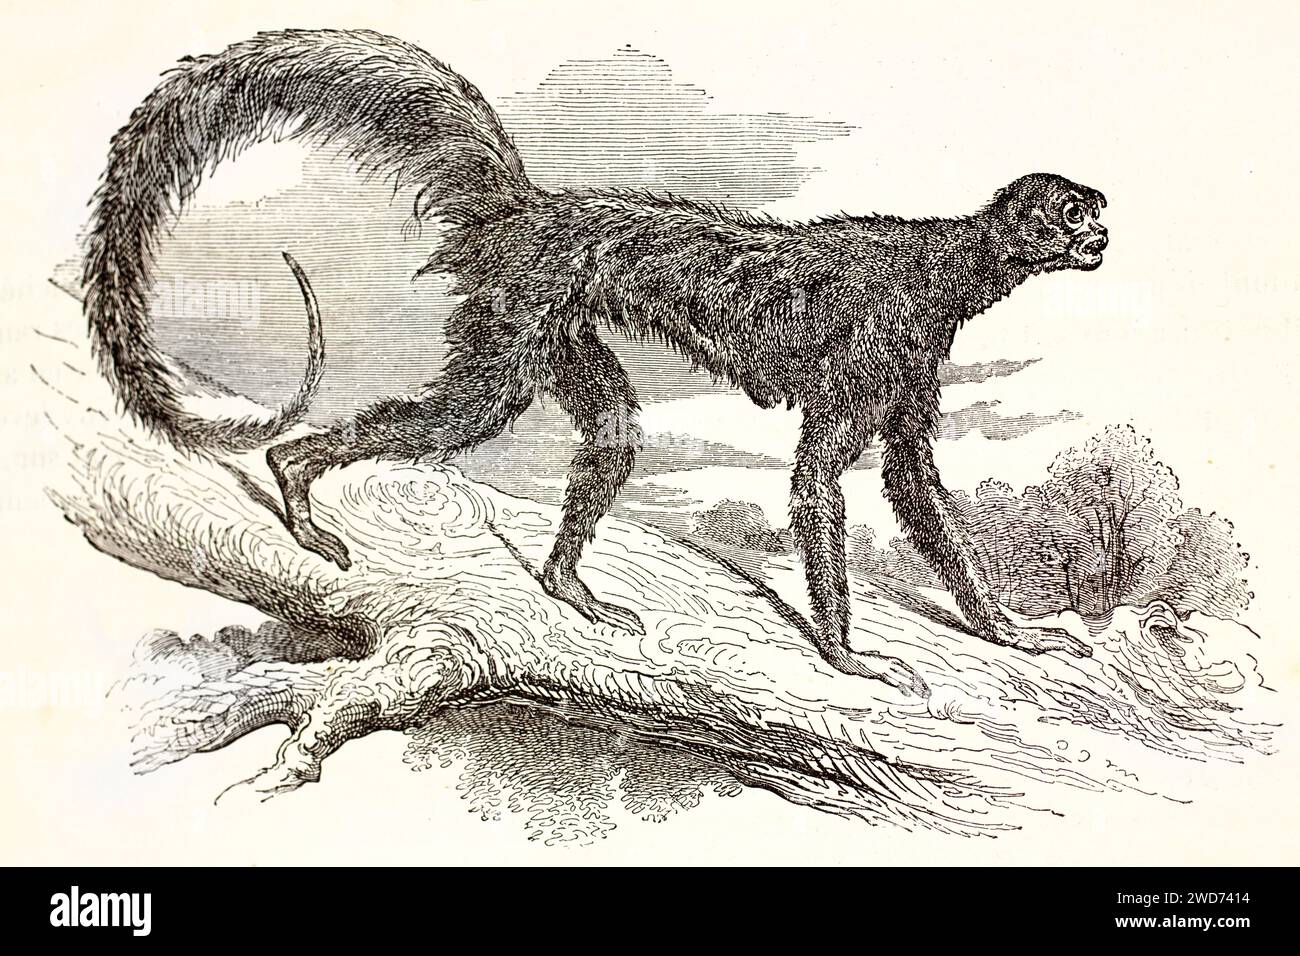 Vecchia illustrazione incisa della scimmia ragno peruviana. Di autore sconosciuto, pubblicato su Brehm, Les Mammifers, Baillière et fils, Parigi, 1878 Foto Stock